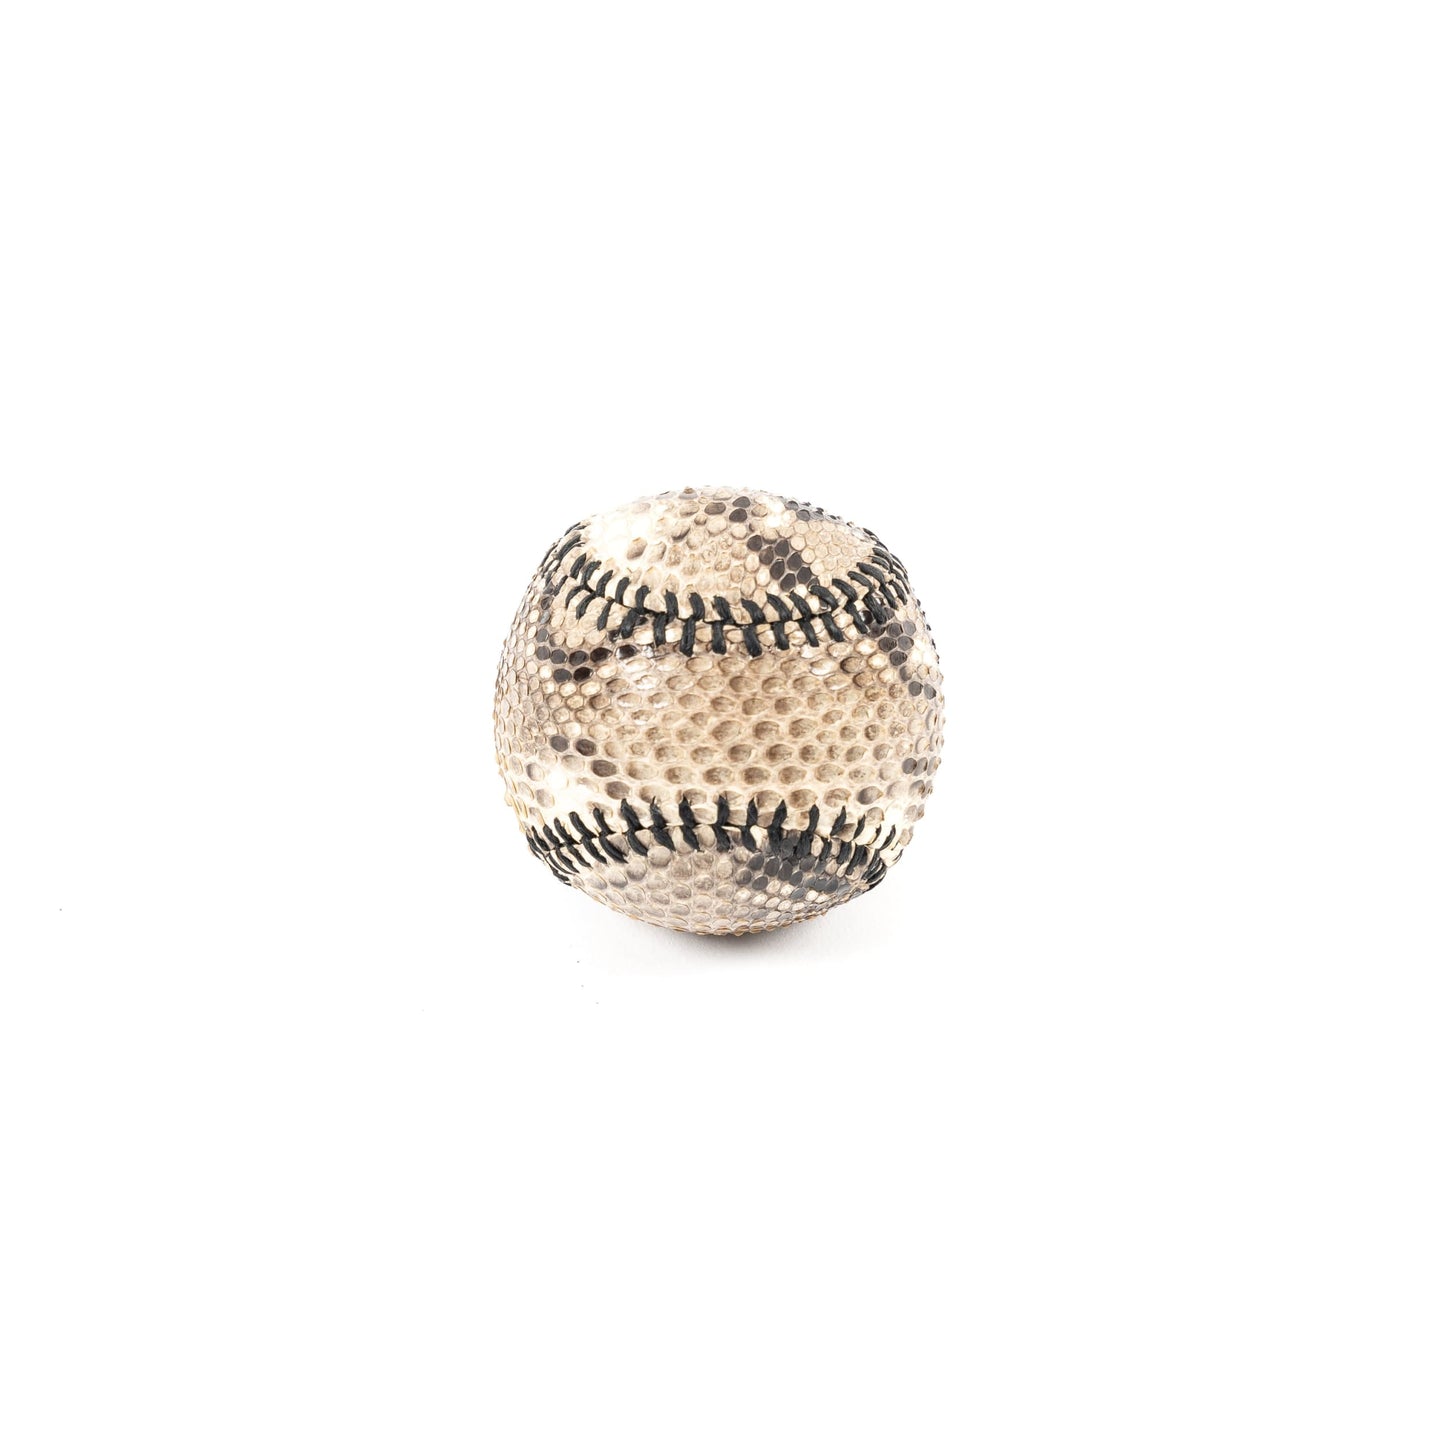 Baseball - Natural Python (baseball) - Athletics Made in USA | Made By Alex